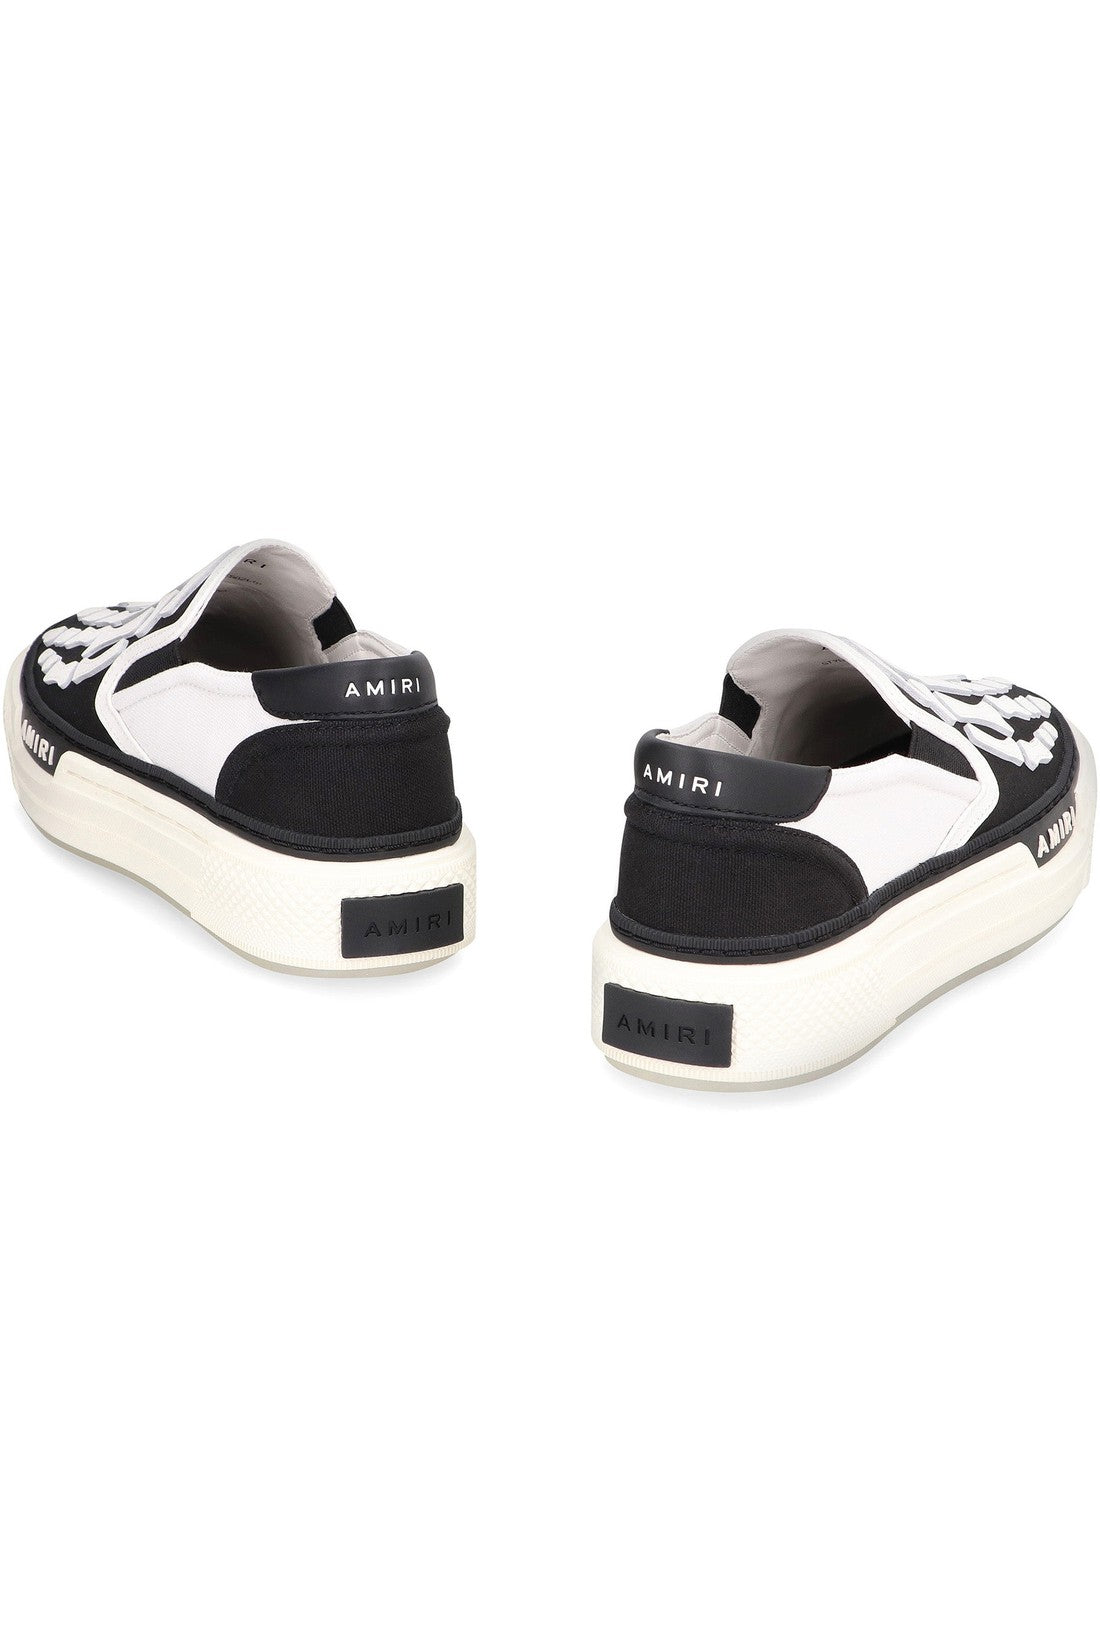 AMIRI-OUTLET-SALE-Skel Top slip-on sneakers-ARCHIVIST